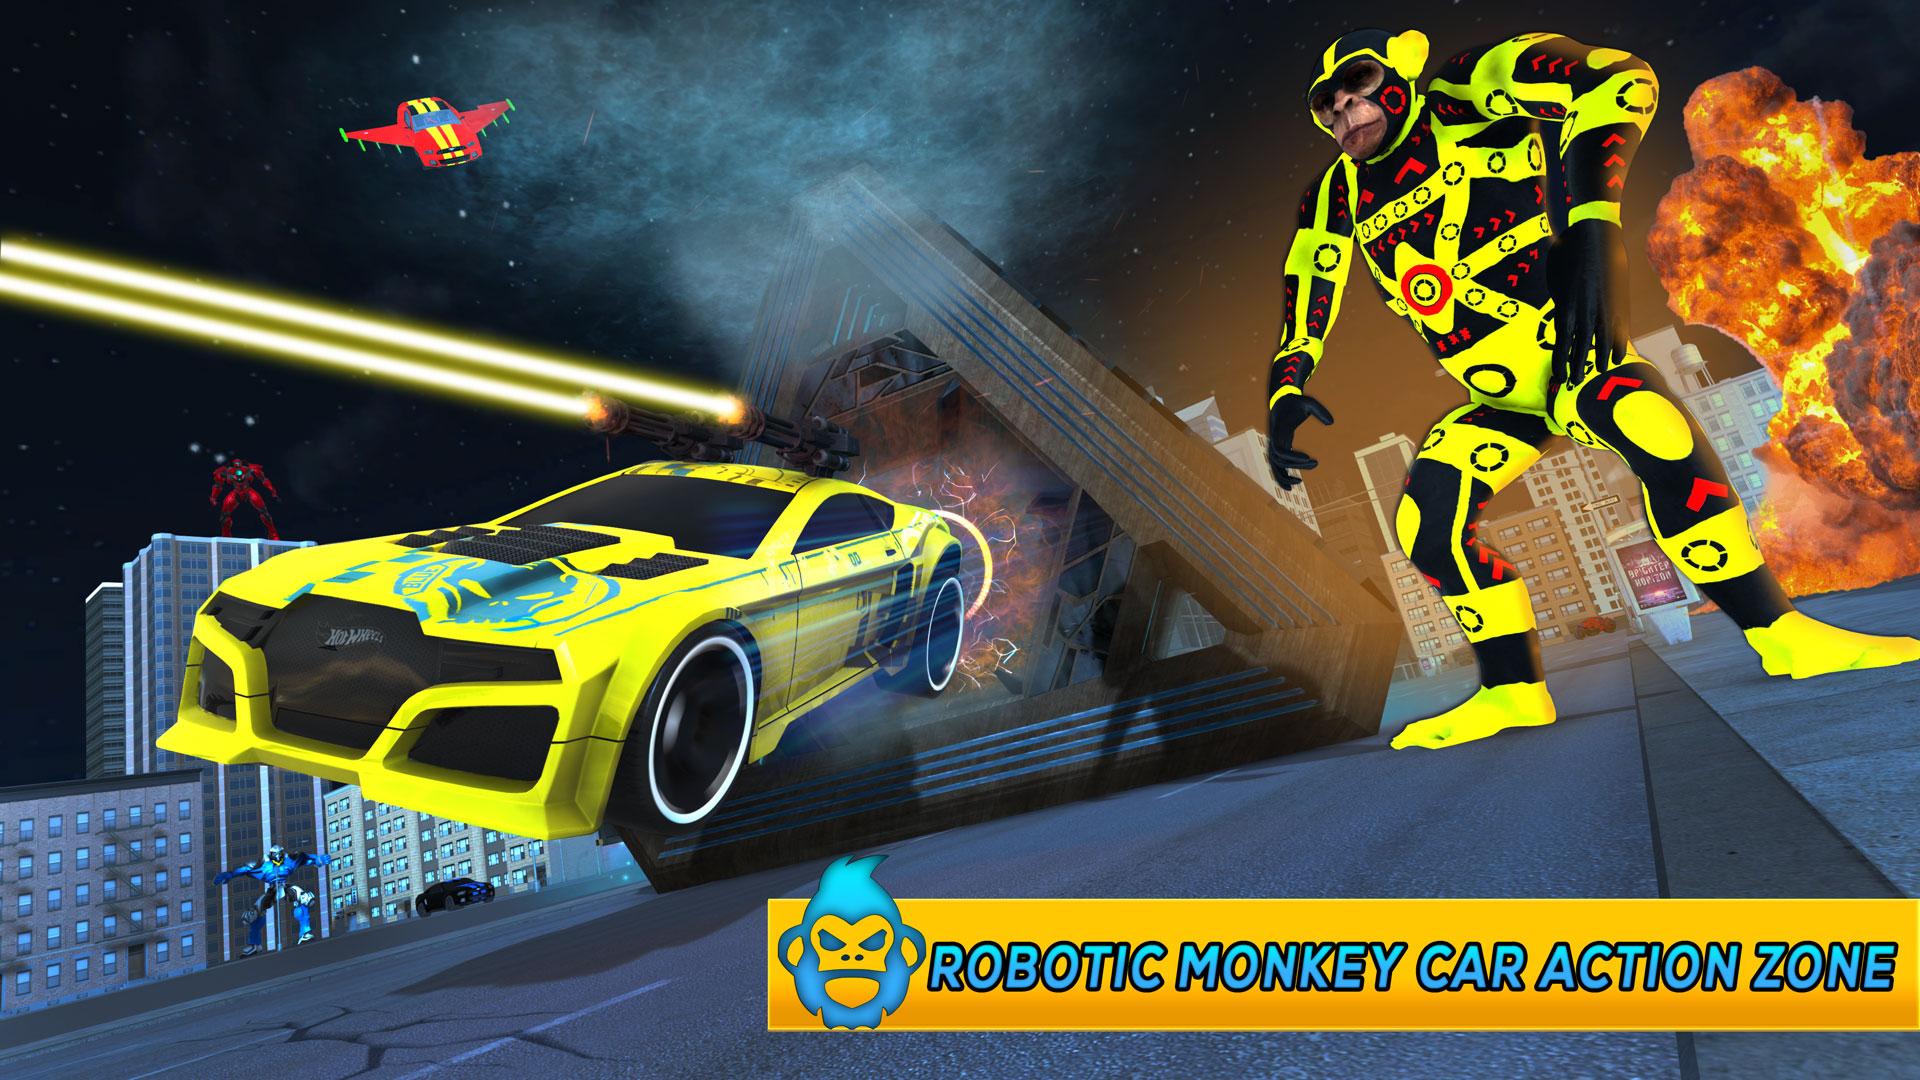 Monkey Car Robot Transformation Game 1.0 Screenshot 8